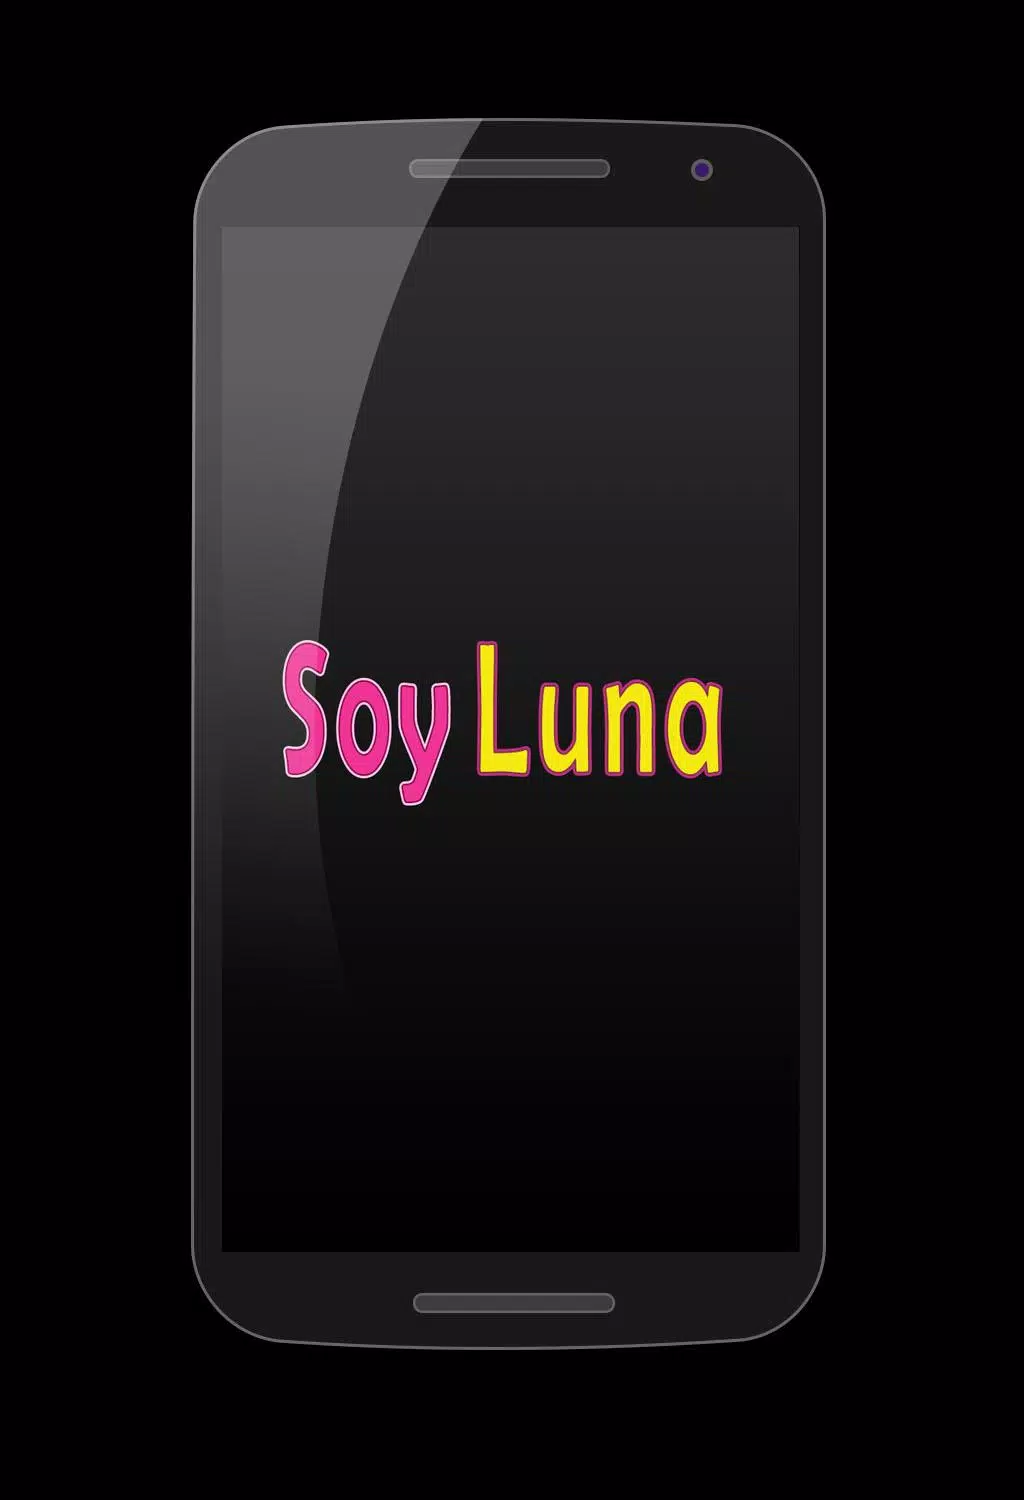 Soy Luna 2 - Siempre Juntos mp3 APK for Android Download